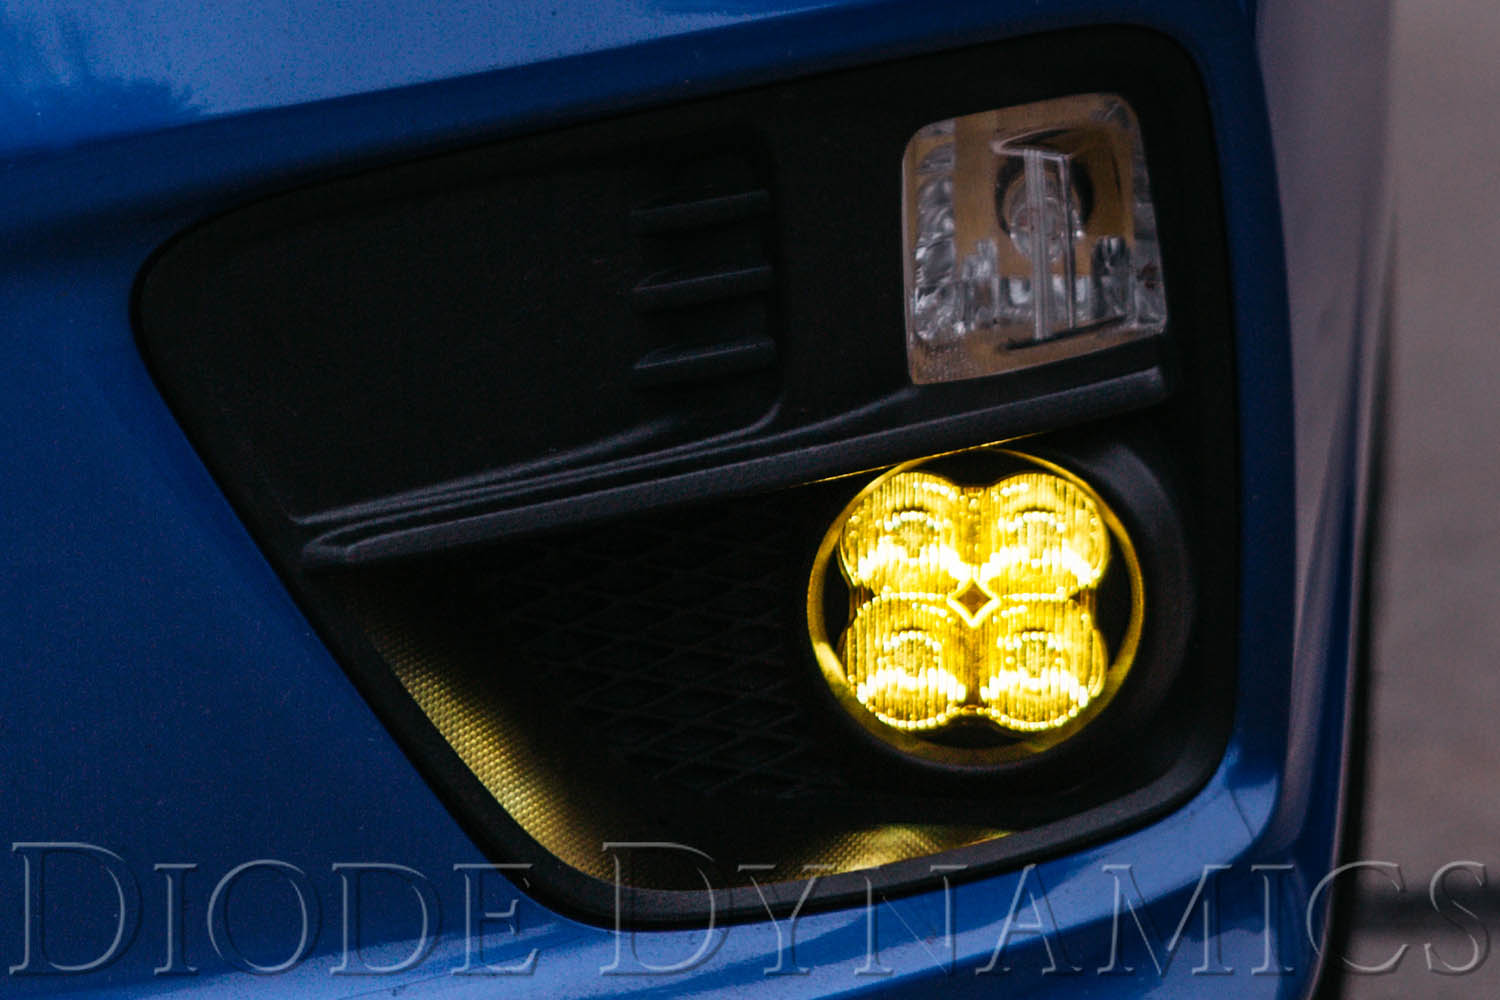 SS3 LED Fog Light Kit for 2013-2016 Honda CR-Z Yellow SAE Fog Pro Diode Dynamics